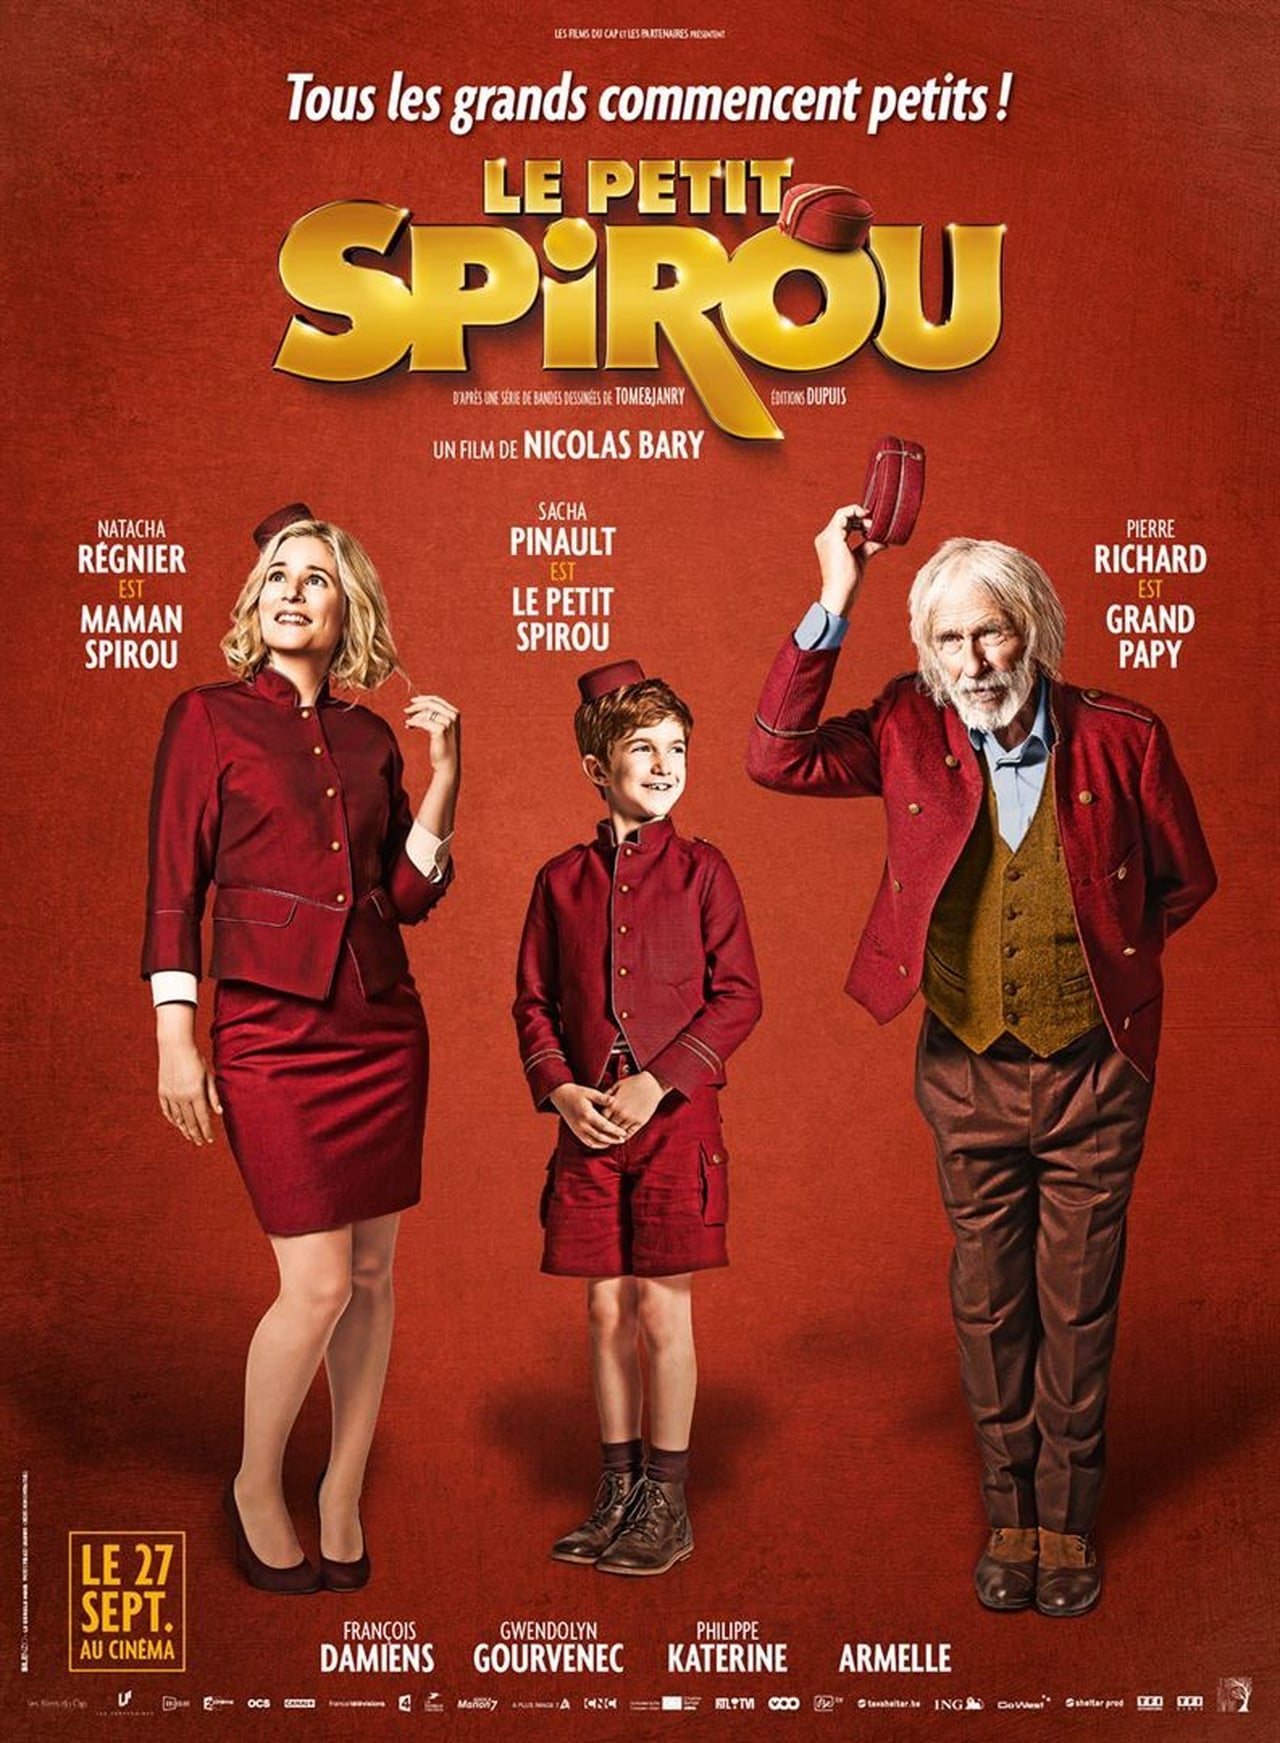 FR - Le Petit Spirou (2016) - PIERRE RICHARD